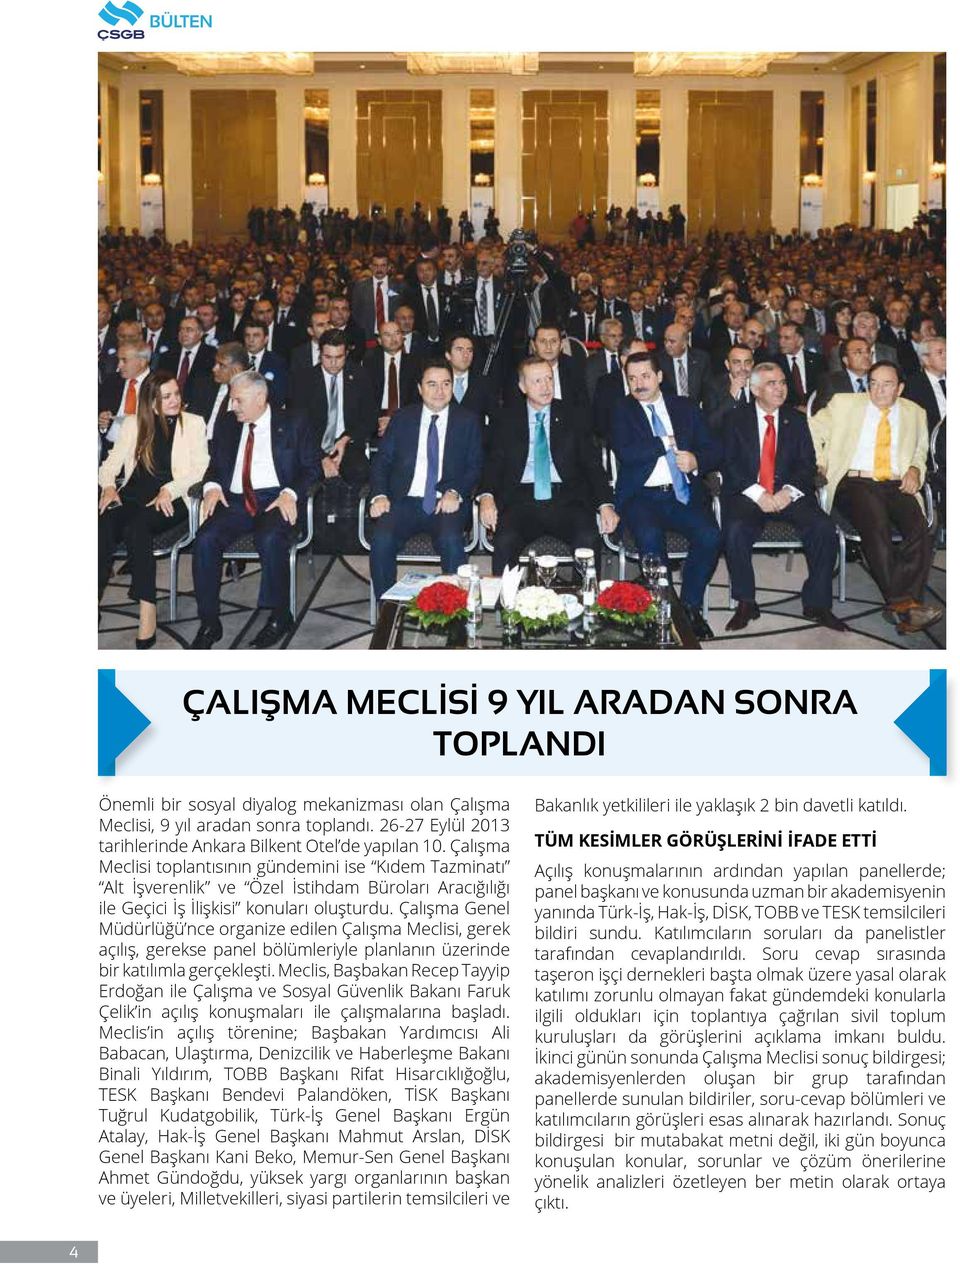 Çalışma Meclisi toplantısının gündemini ise Kıdem Tazminatı Alt İşverenlik ve Özel İstihdam Büroları Aracığılığı ile Geçici İş İlişkisi konuları oluşturdu.